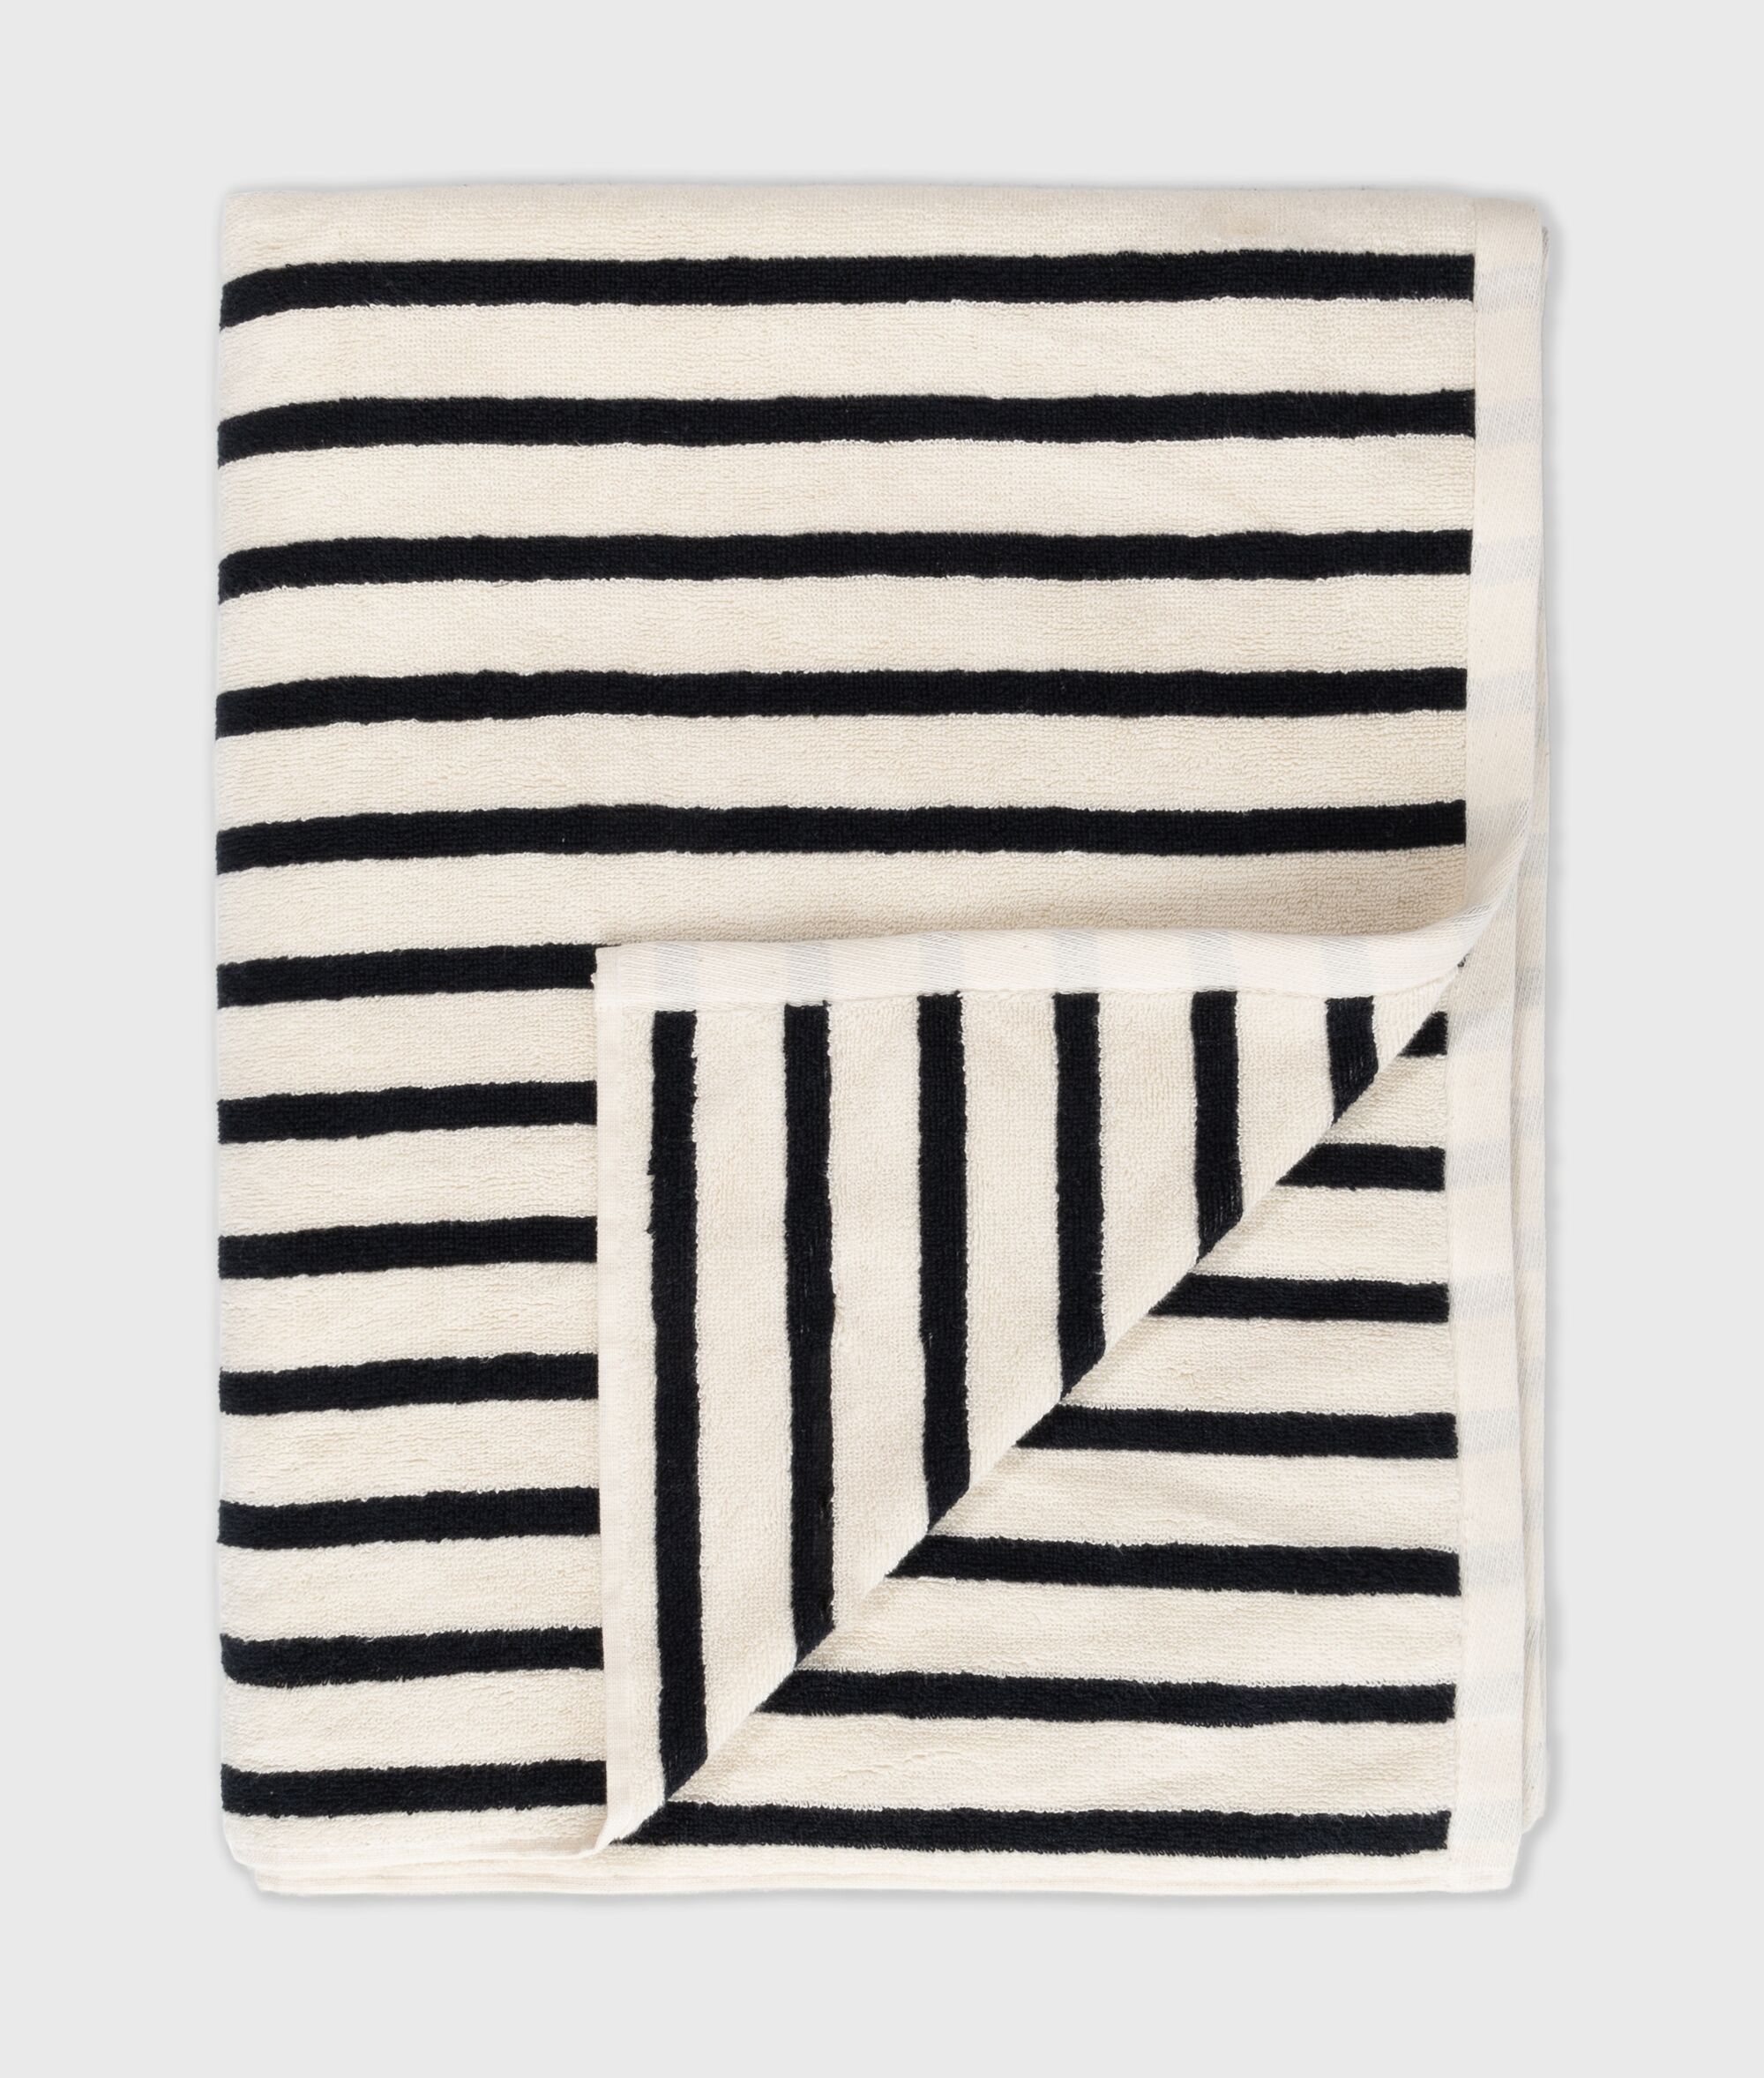 65 300 9900 3006 10days Amsterdam Handtuch Towel Bath Stripes Ecru Black (1)